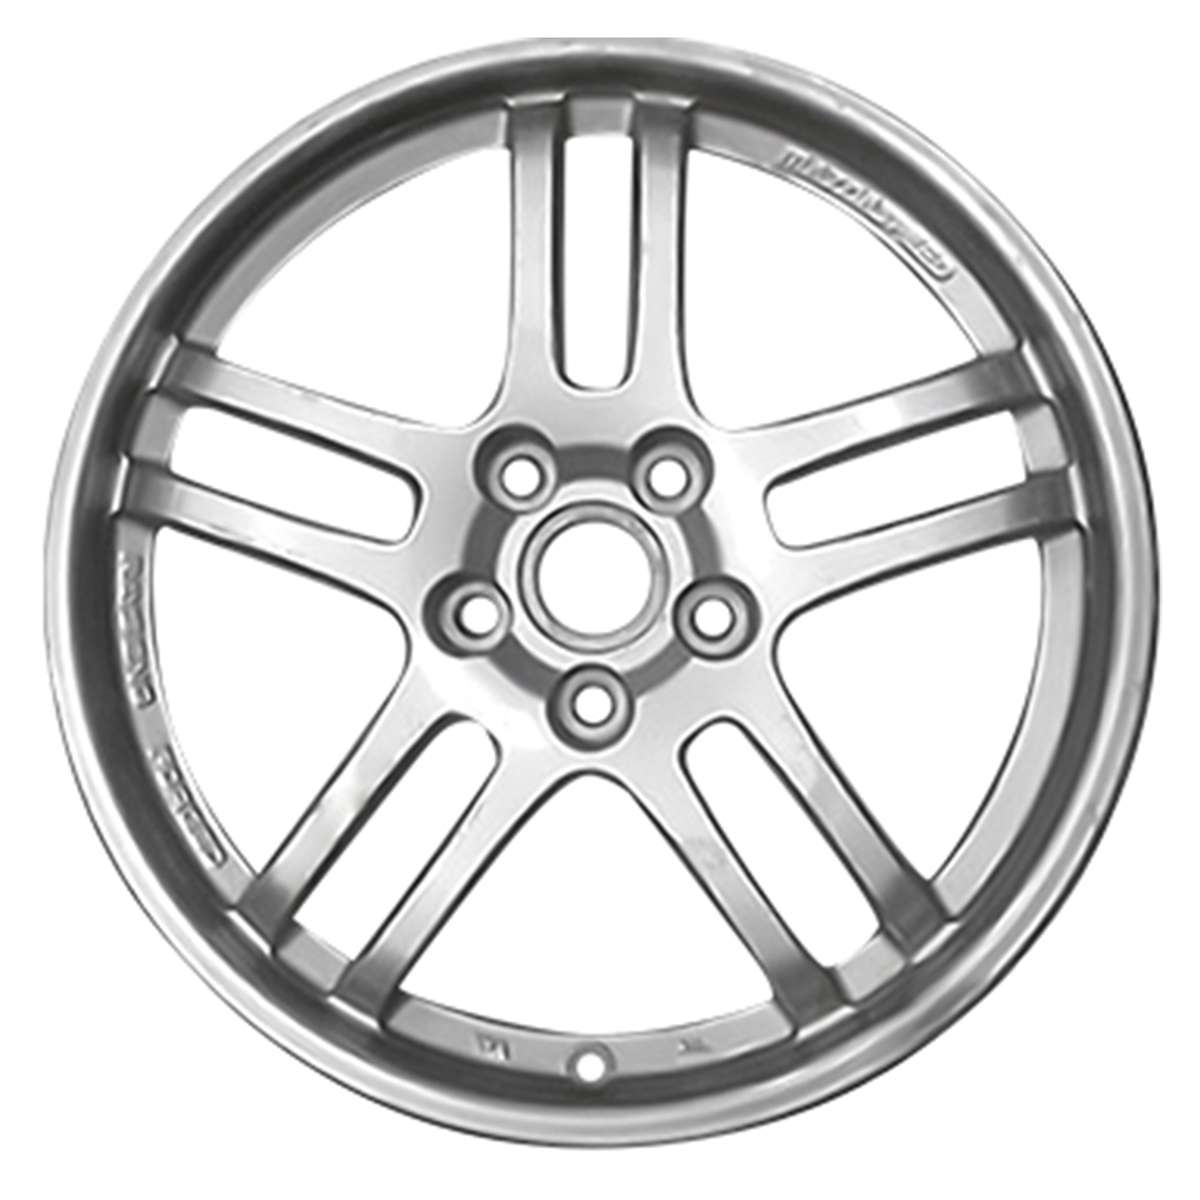 2017 Mazda 3 18" OEM Wheel Rim W96086S